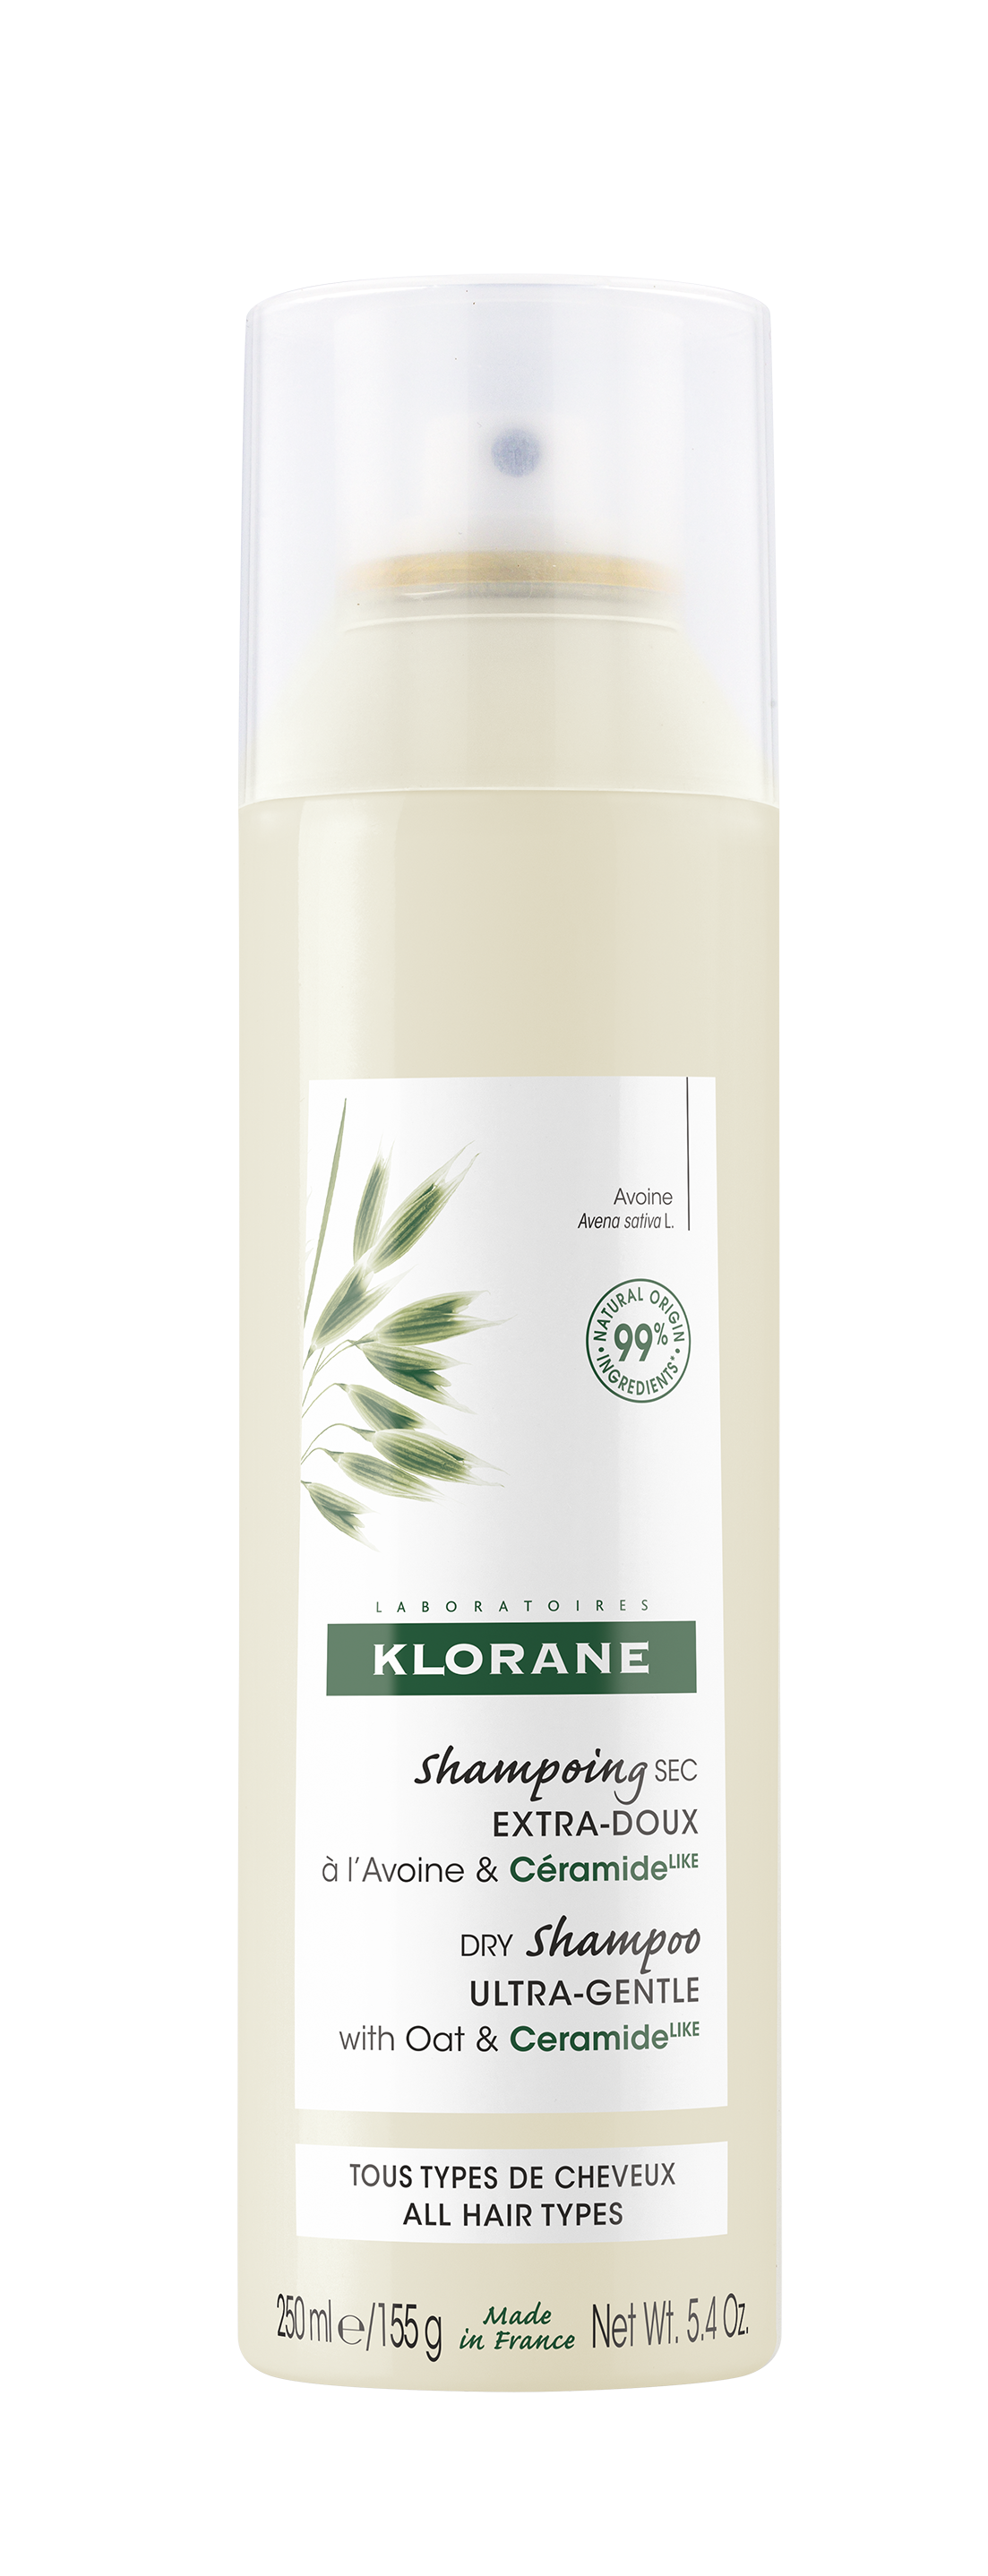 შვრიის ექსტრაქტზე დამზადებული მშრალი შამპუნი - კლორანი / Dry shampoo with oat milk – KLORANE